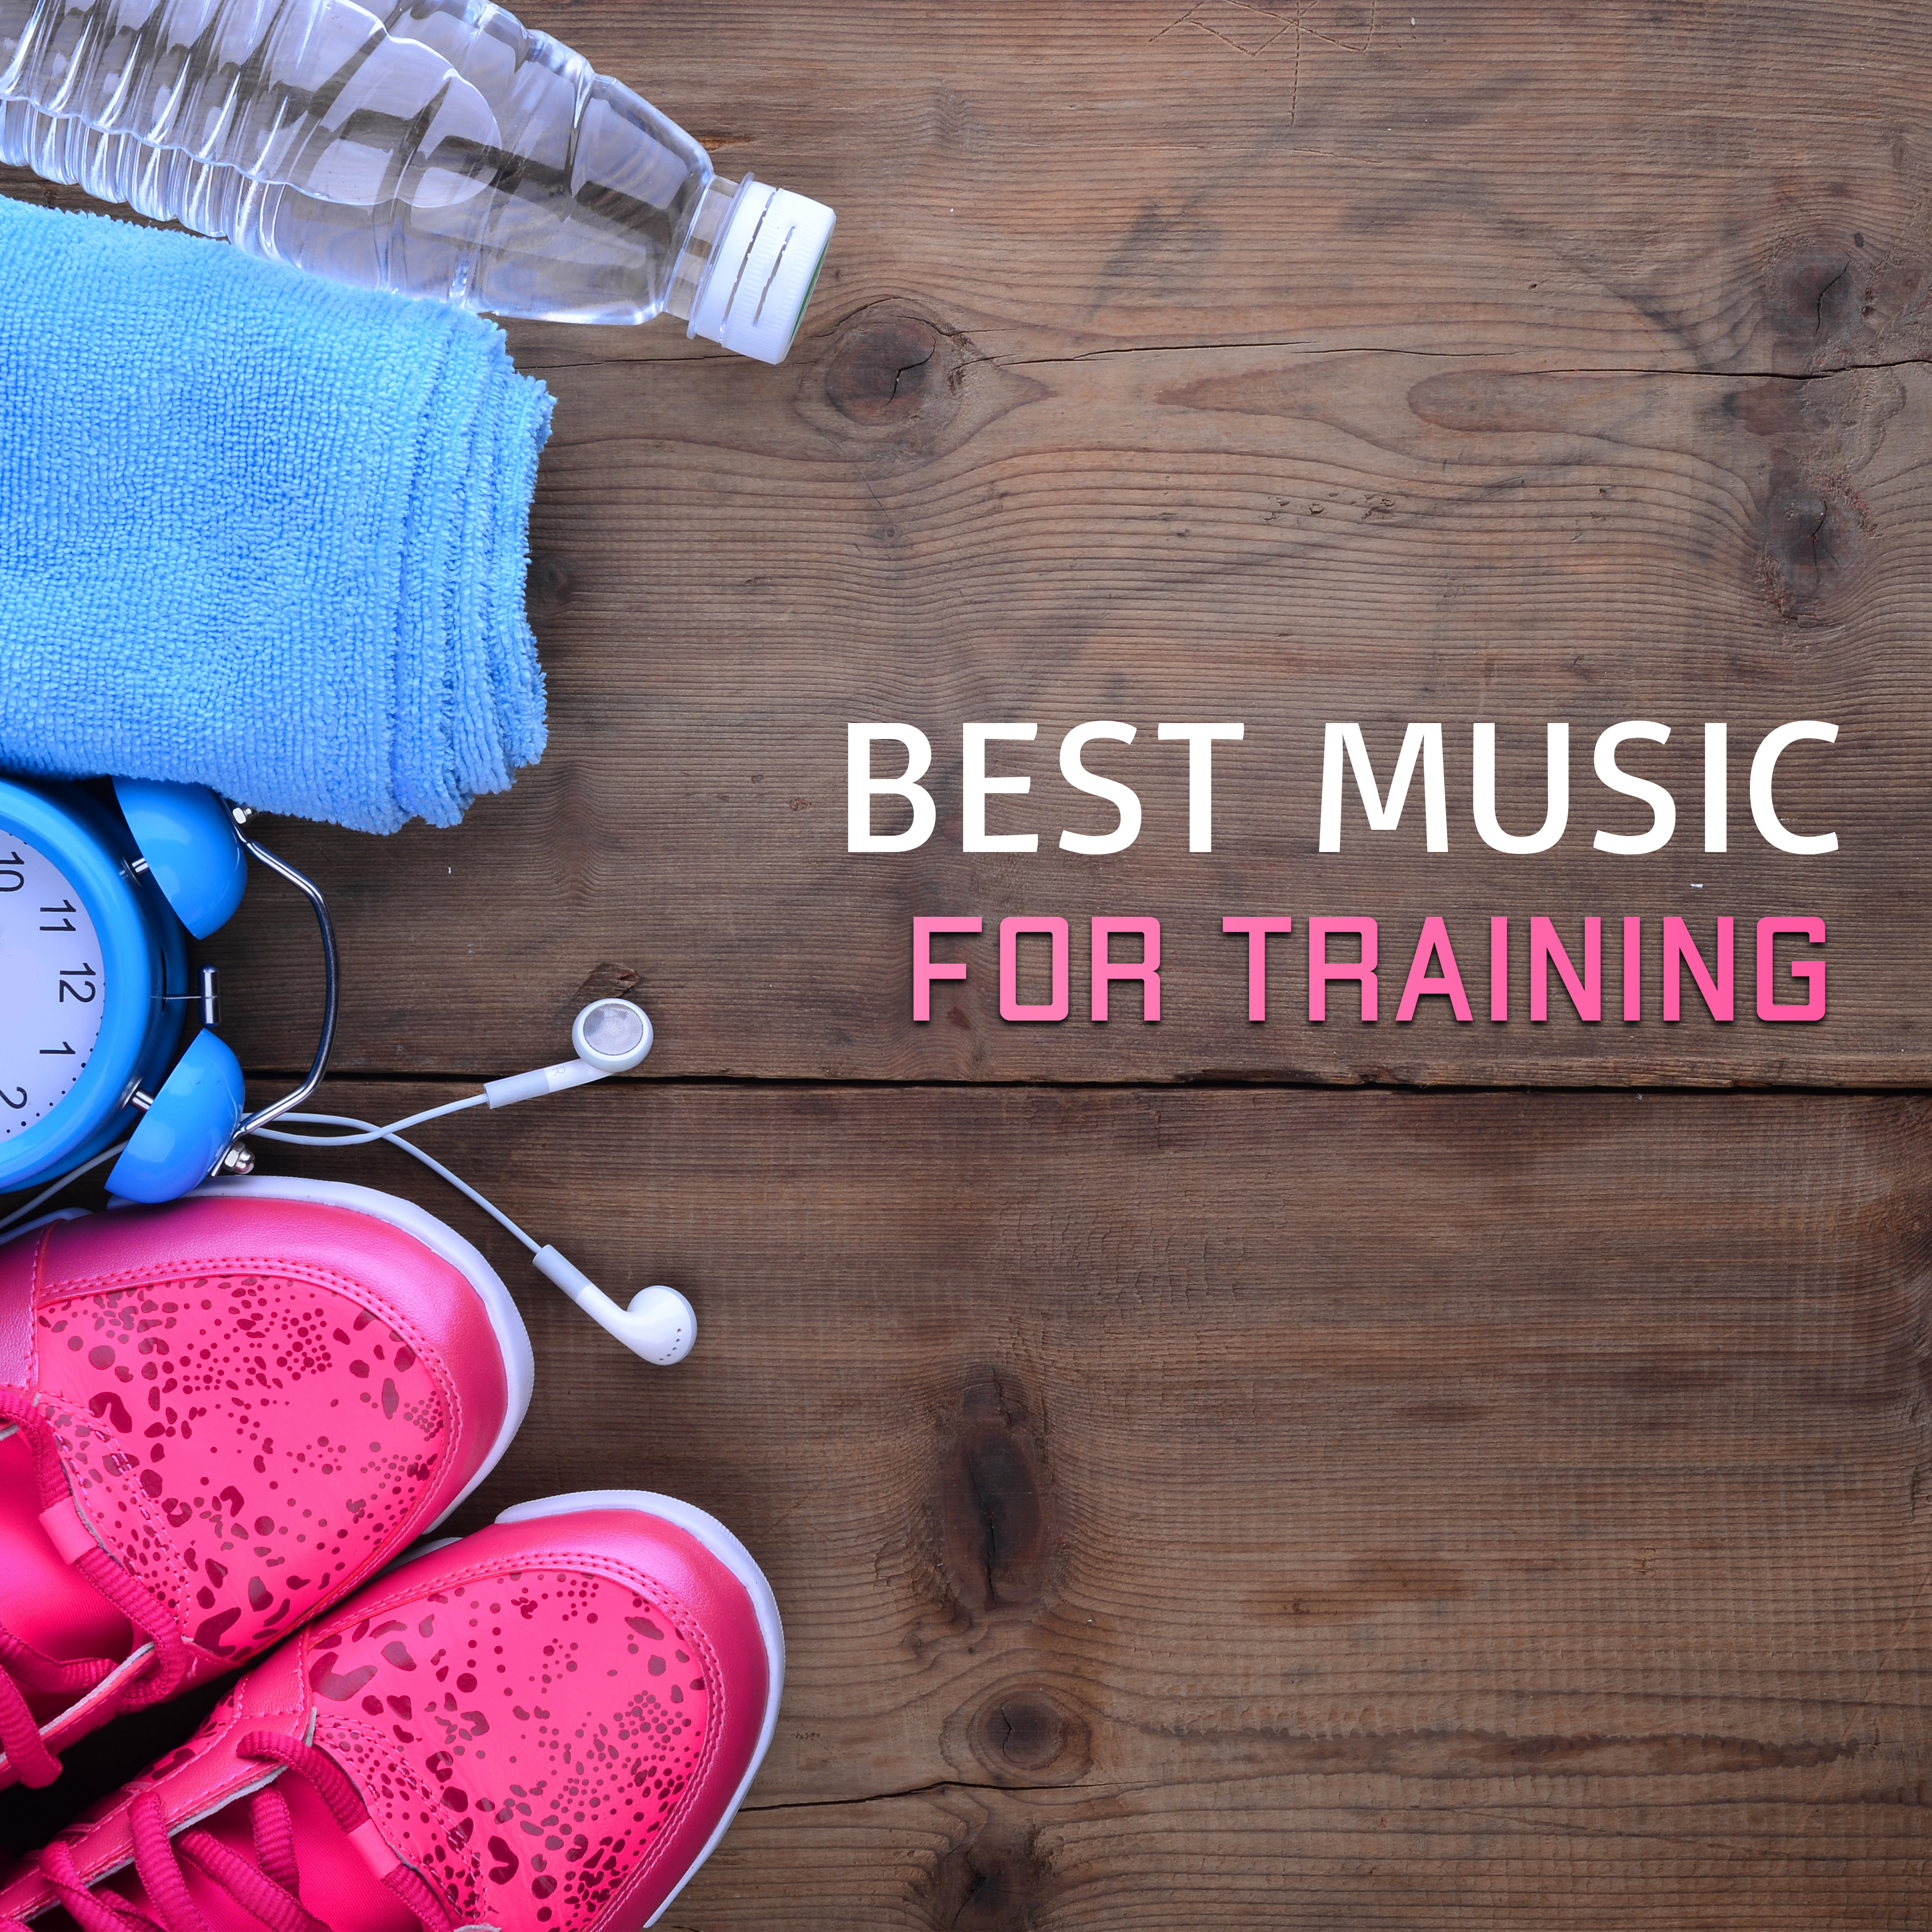 Best Music for Training